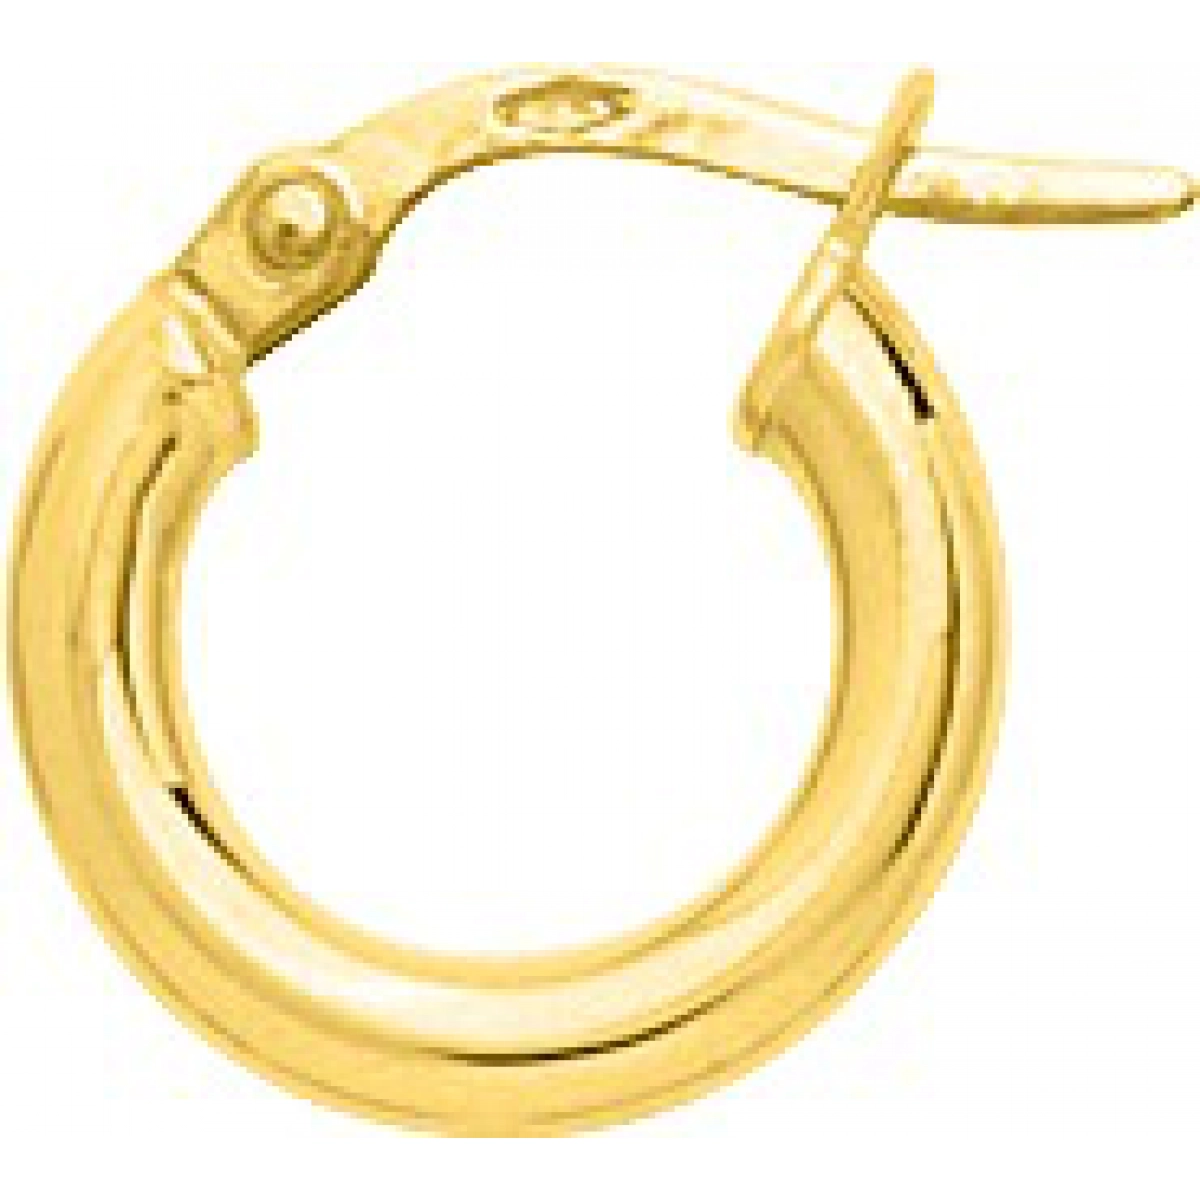 Hoops earrings pair plain 9K YG  Lua Blanca  650001.2.0